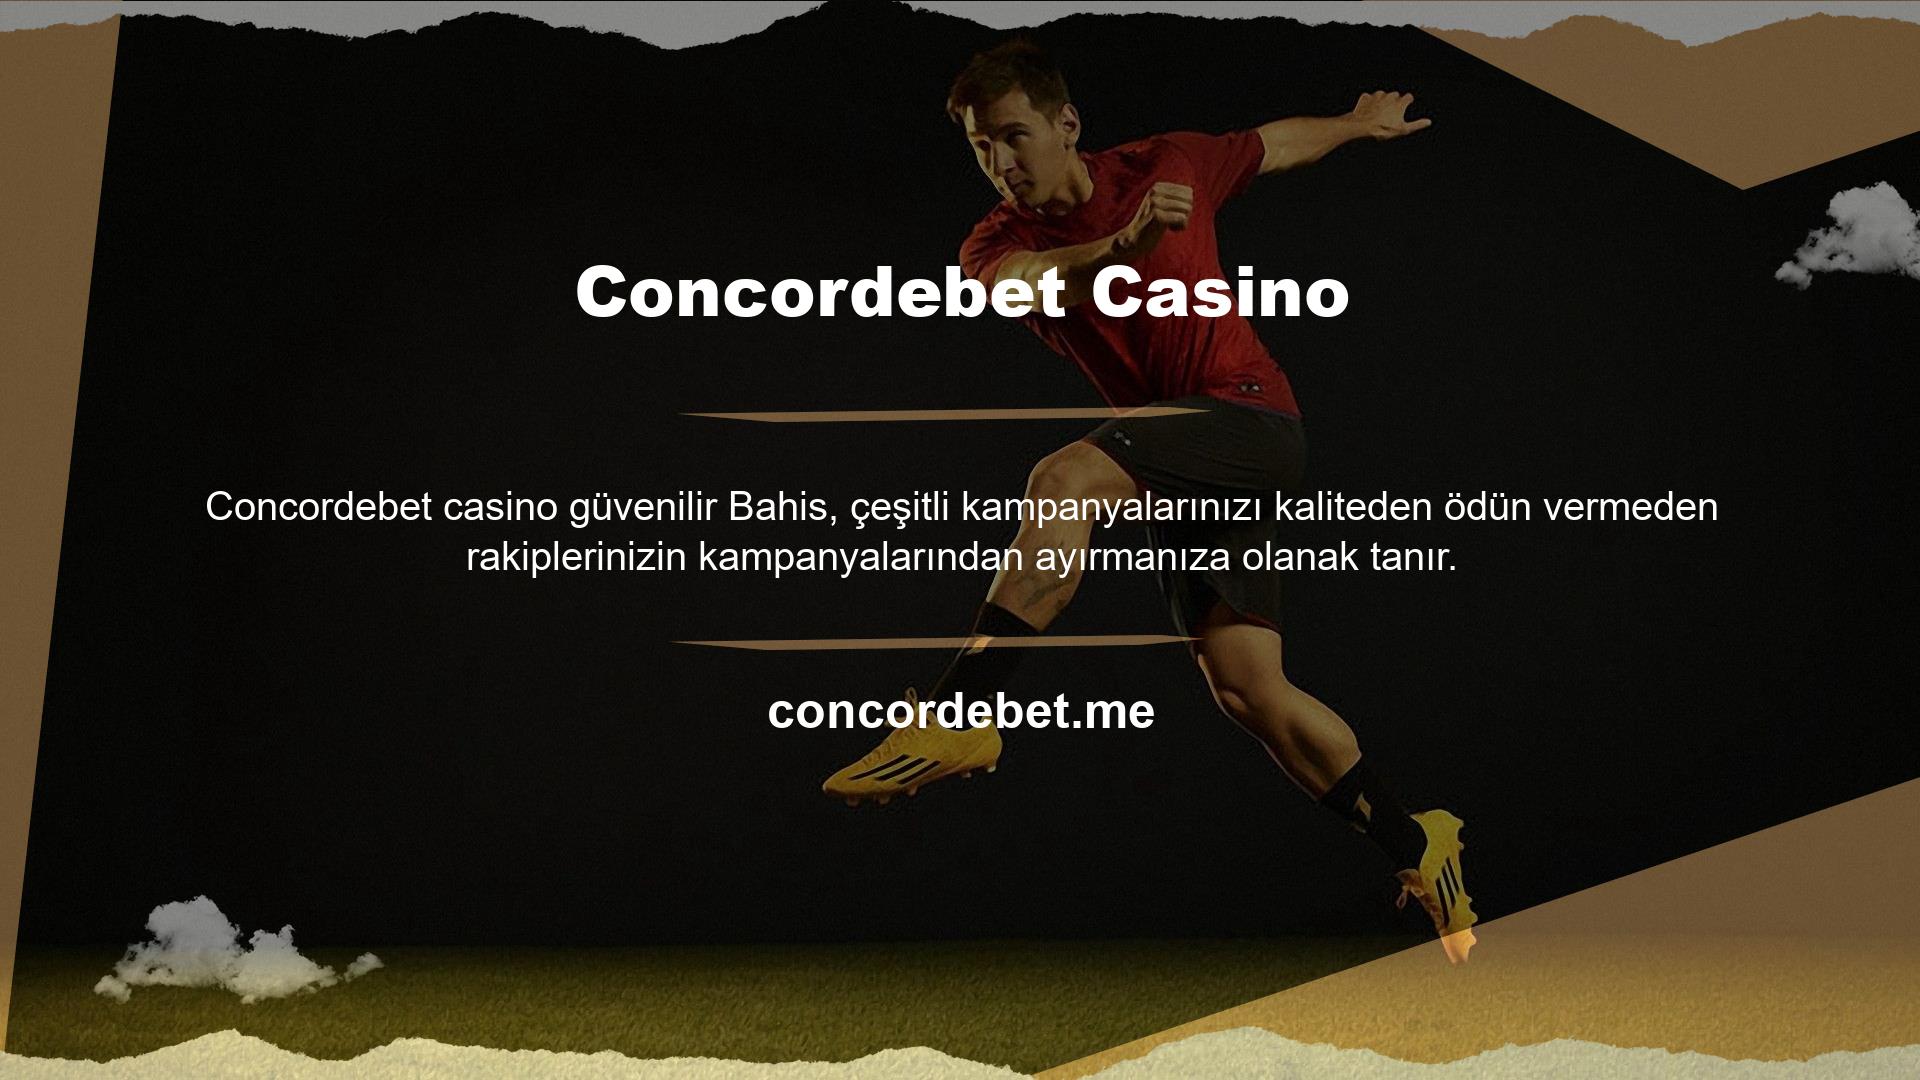 En popüler canlı bahis ve casino sitesi Concordebet, üyelerine her zaman en iyi oranları ve bahis seçeneklerini sunmayı amaç edinmiş bir bahis sitesidir